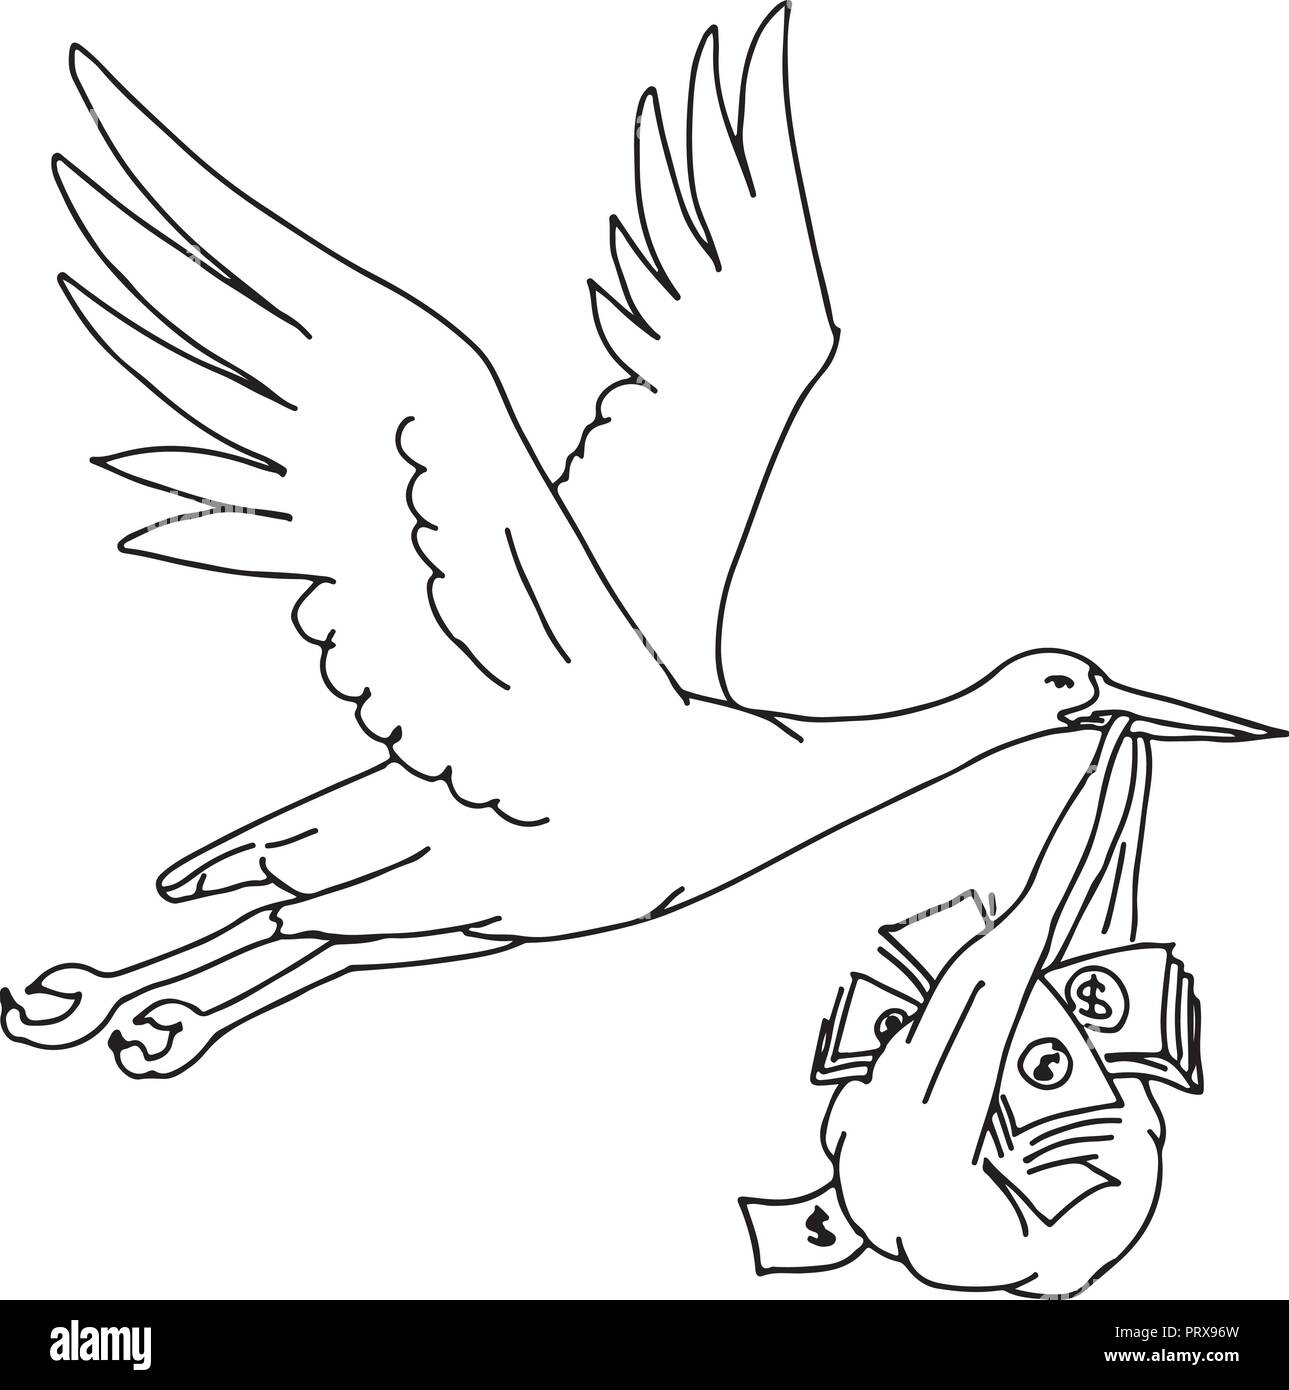 Zeichnung Skizze stil Abbildung: ein Storch, Kran, Reiher oder Ibis, eine grosse, langbeinige, Langhalslaute waten Vogel mit einem langen, stout Rechnung tragen oder de Stock Vektor